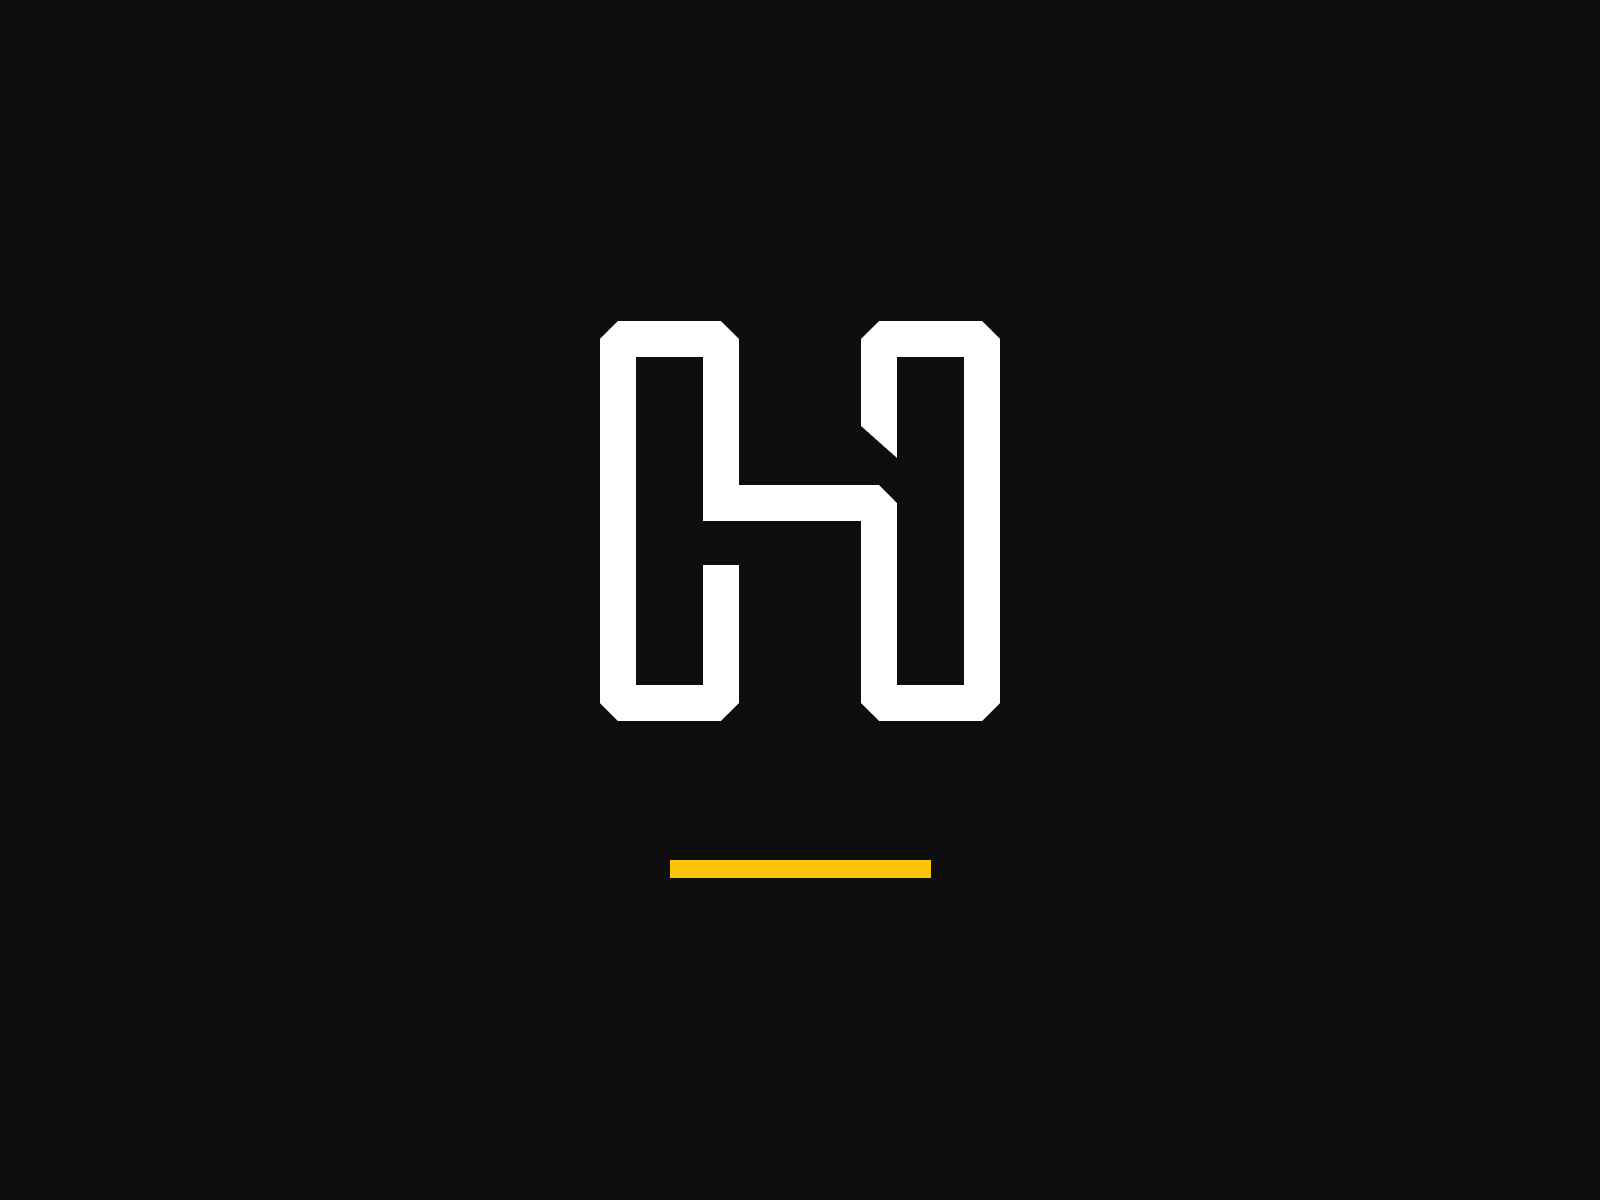 HUB XP logo by Juliana Morozowski on Dribbble